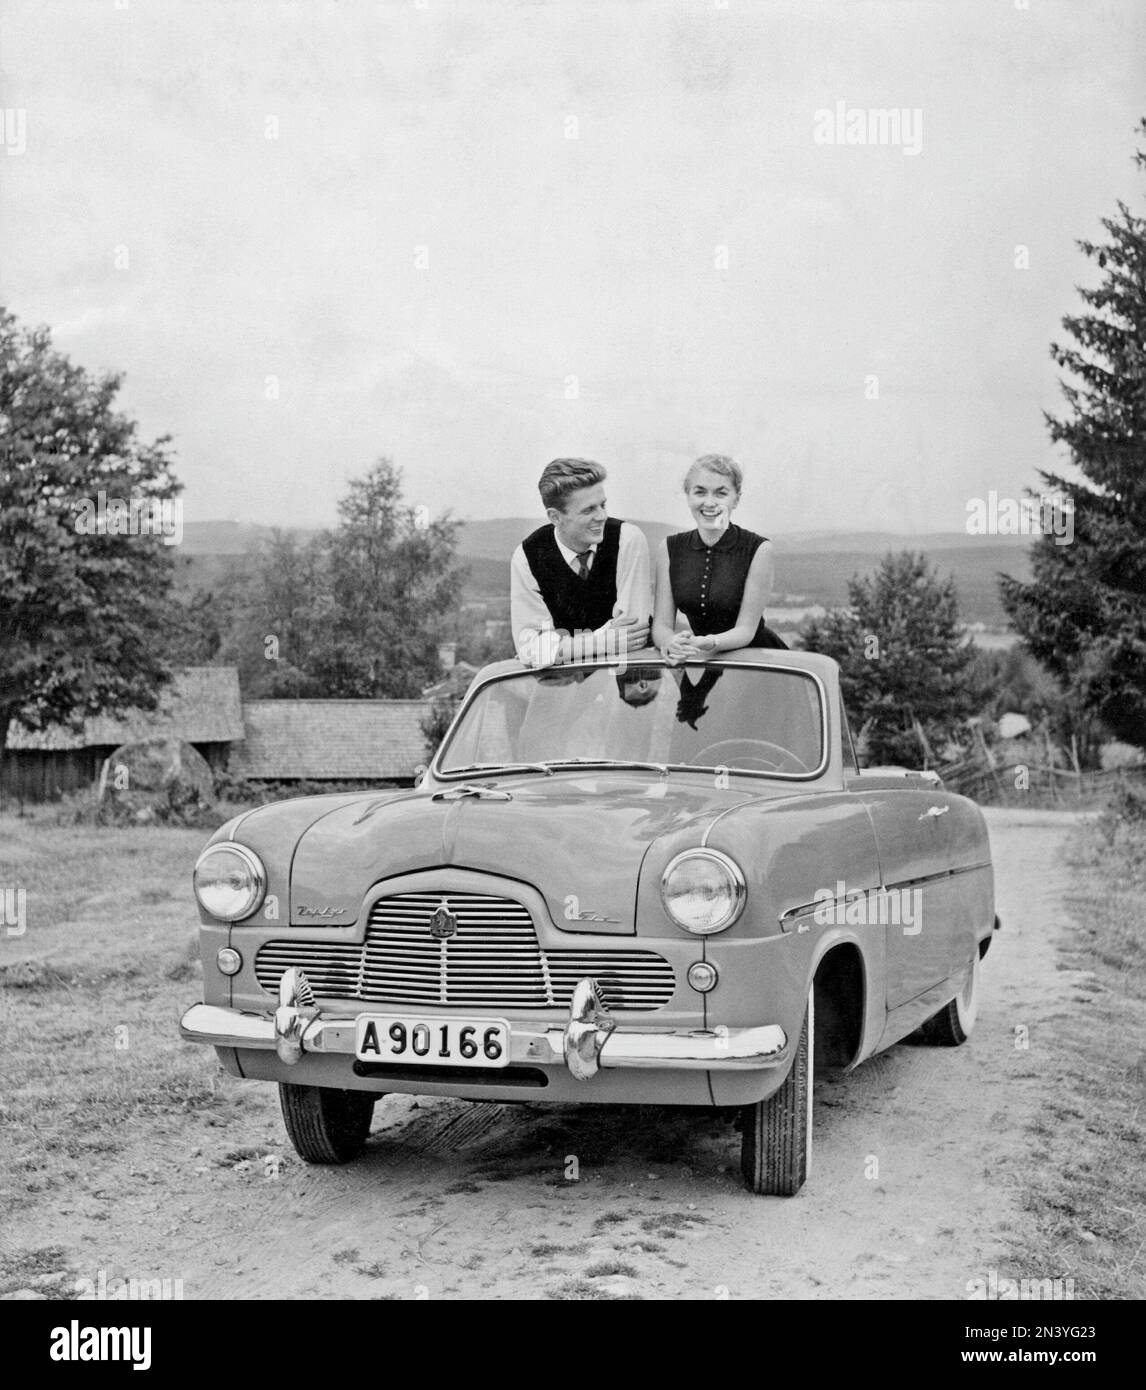 Conduite dans le 1950s. Un couple est vu assis dans leur voiture, un Ford Zephy convertible. Suède 1955 Banque D'Images